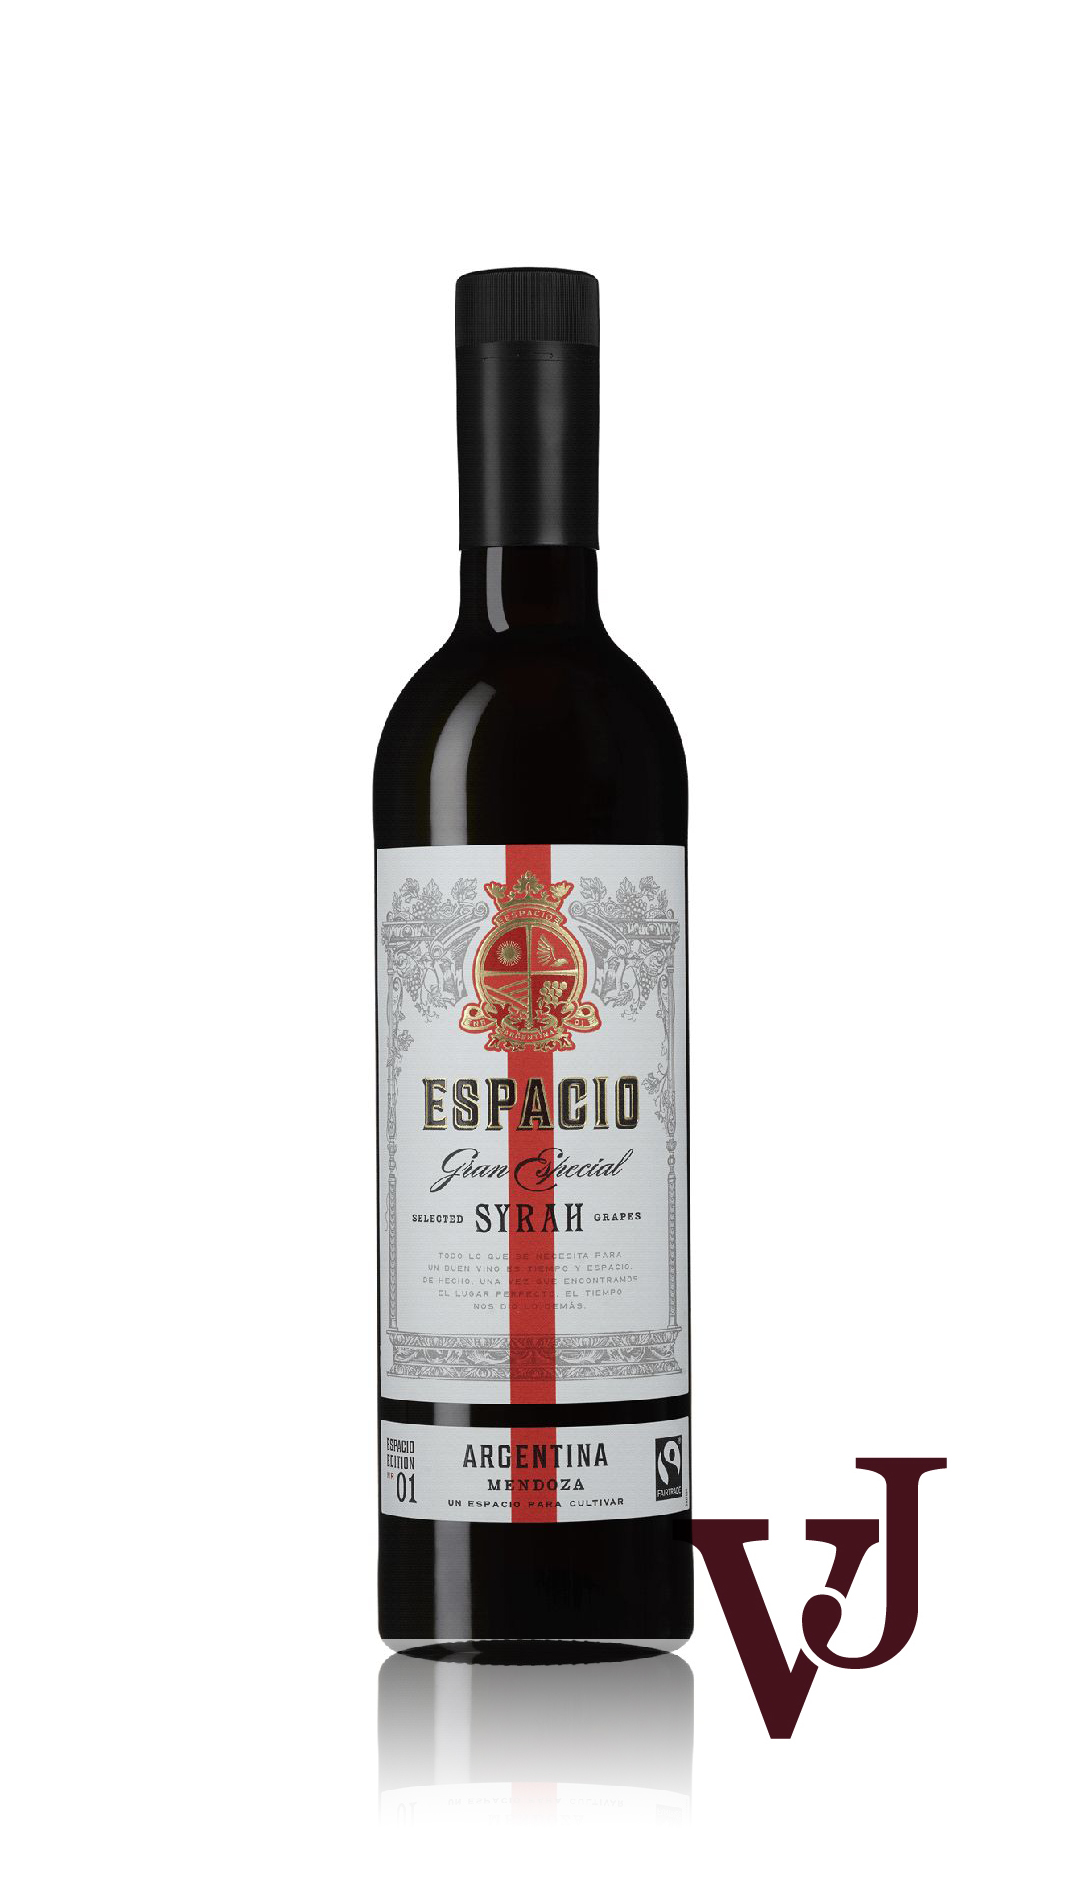 Rött Vin - Espacio Syrah artikel nummer 272201 från producenten Anora Group PLC från området Argentina